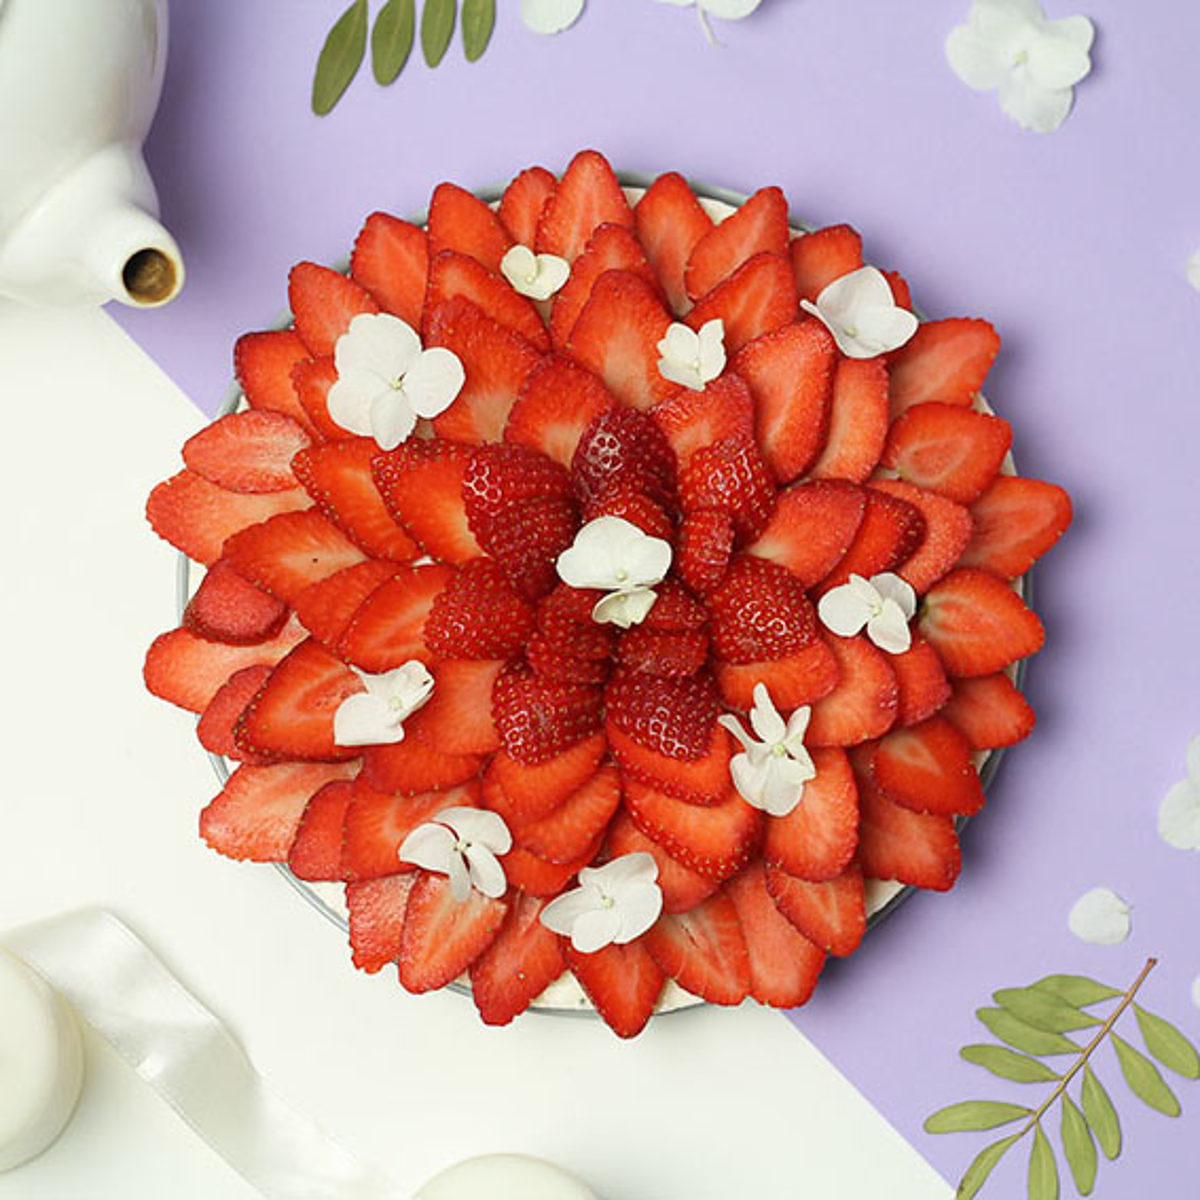 Cheesecake sans gluten aux fraises et à la fleur d'oranger - Cuisine - Le journal de Saxe x Miss Blemish